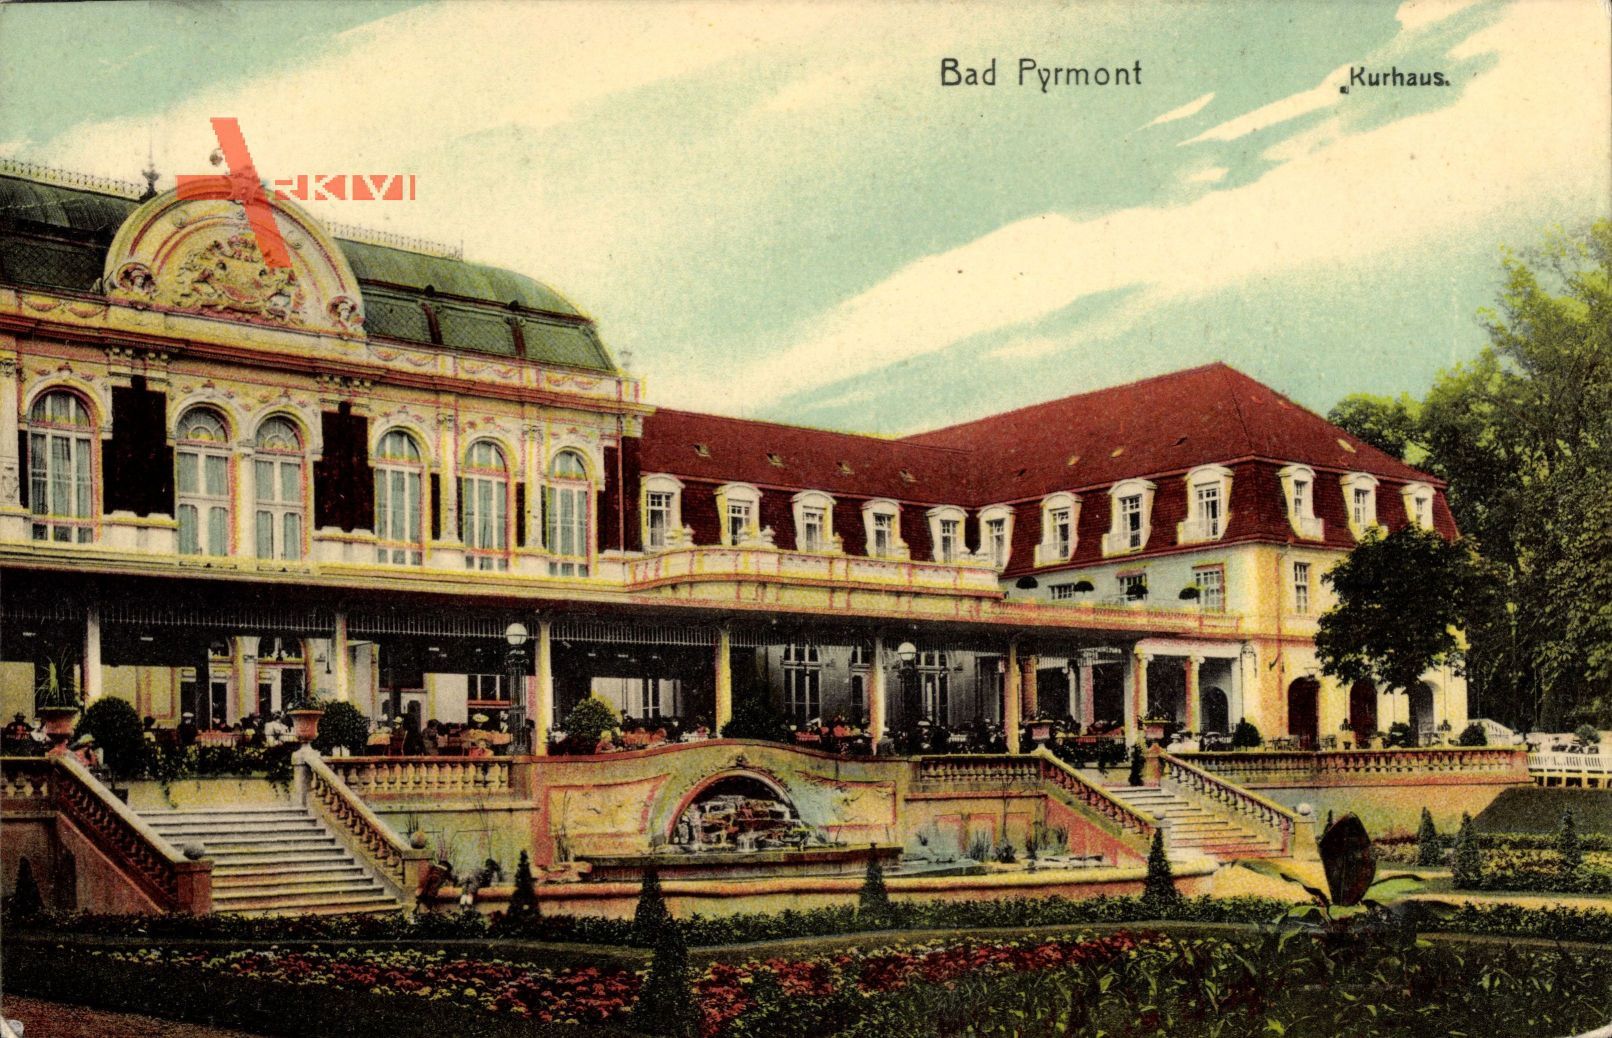 Bad Pyrmont, Das Kurhaus von der Gartenseite aus, Terrasse